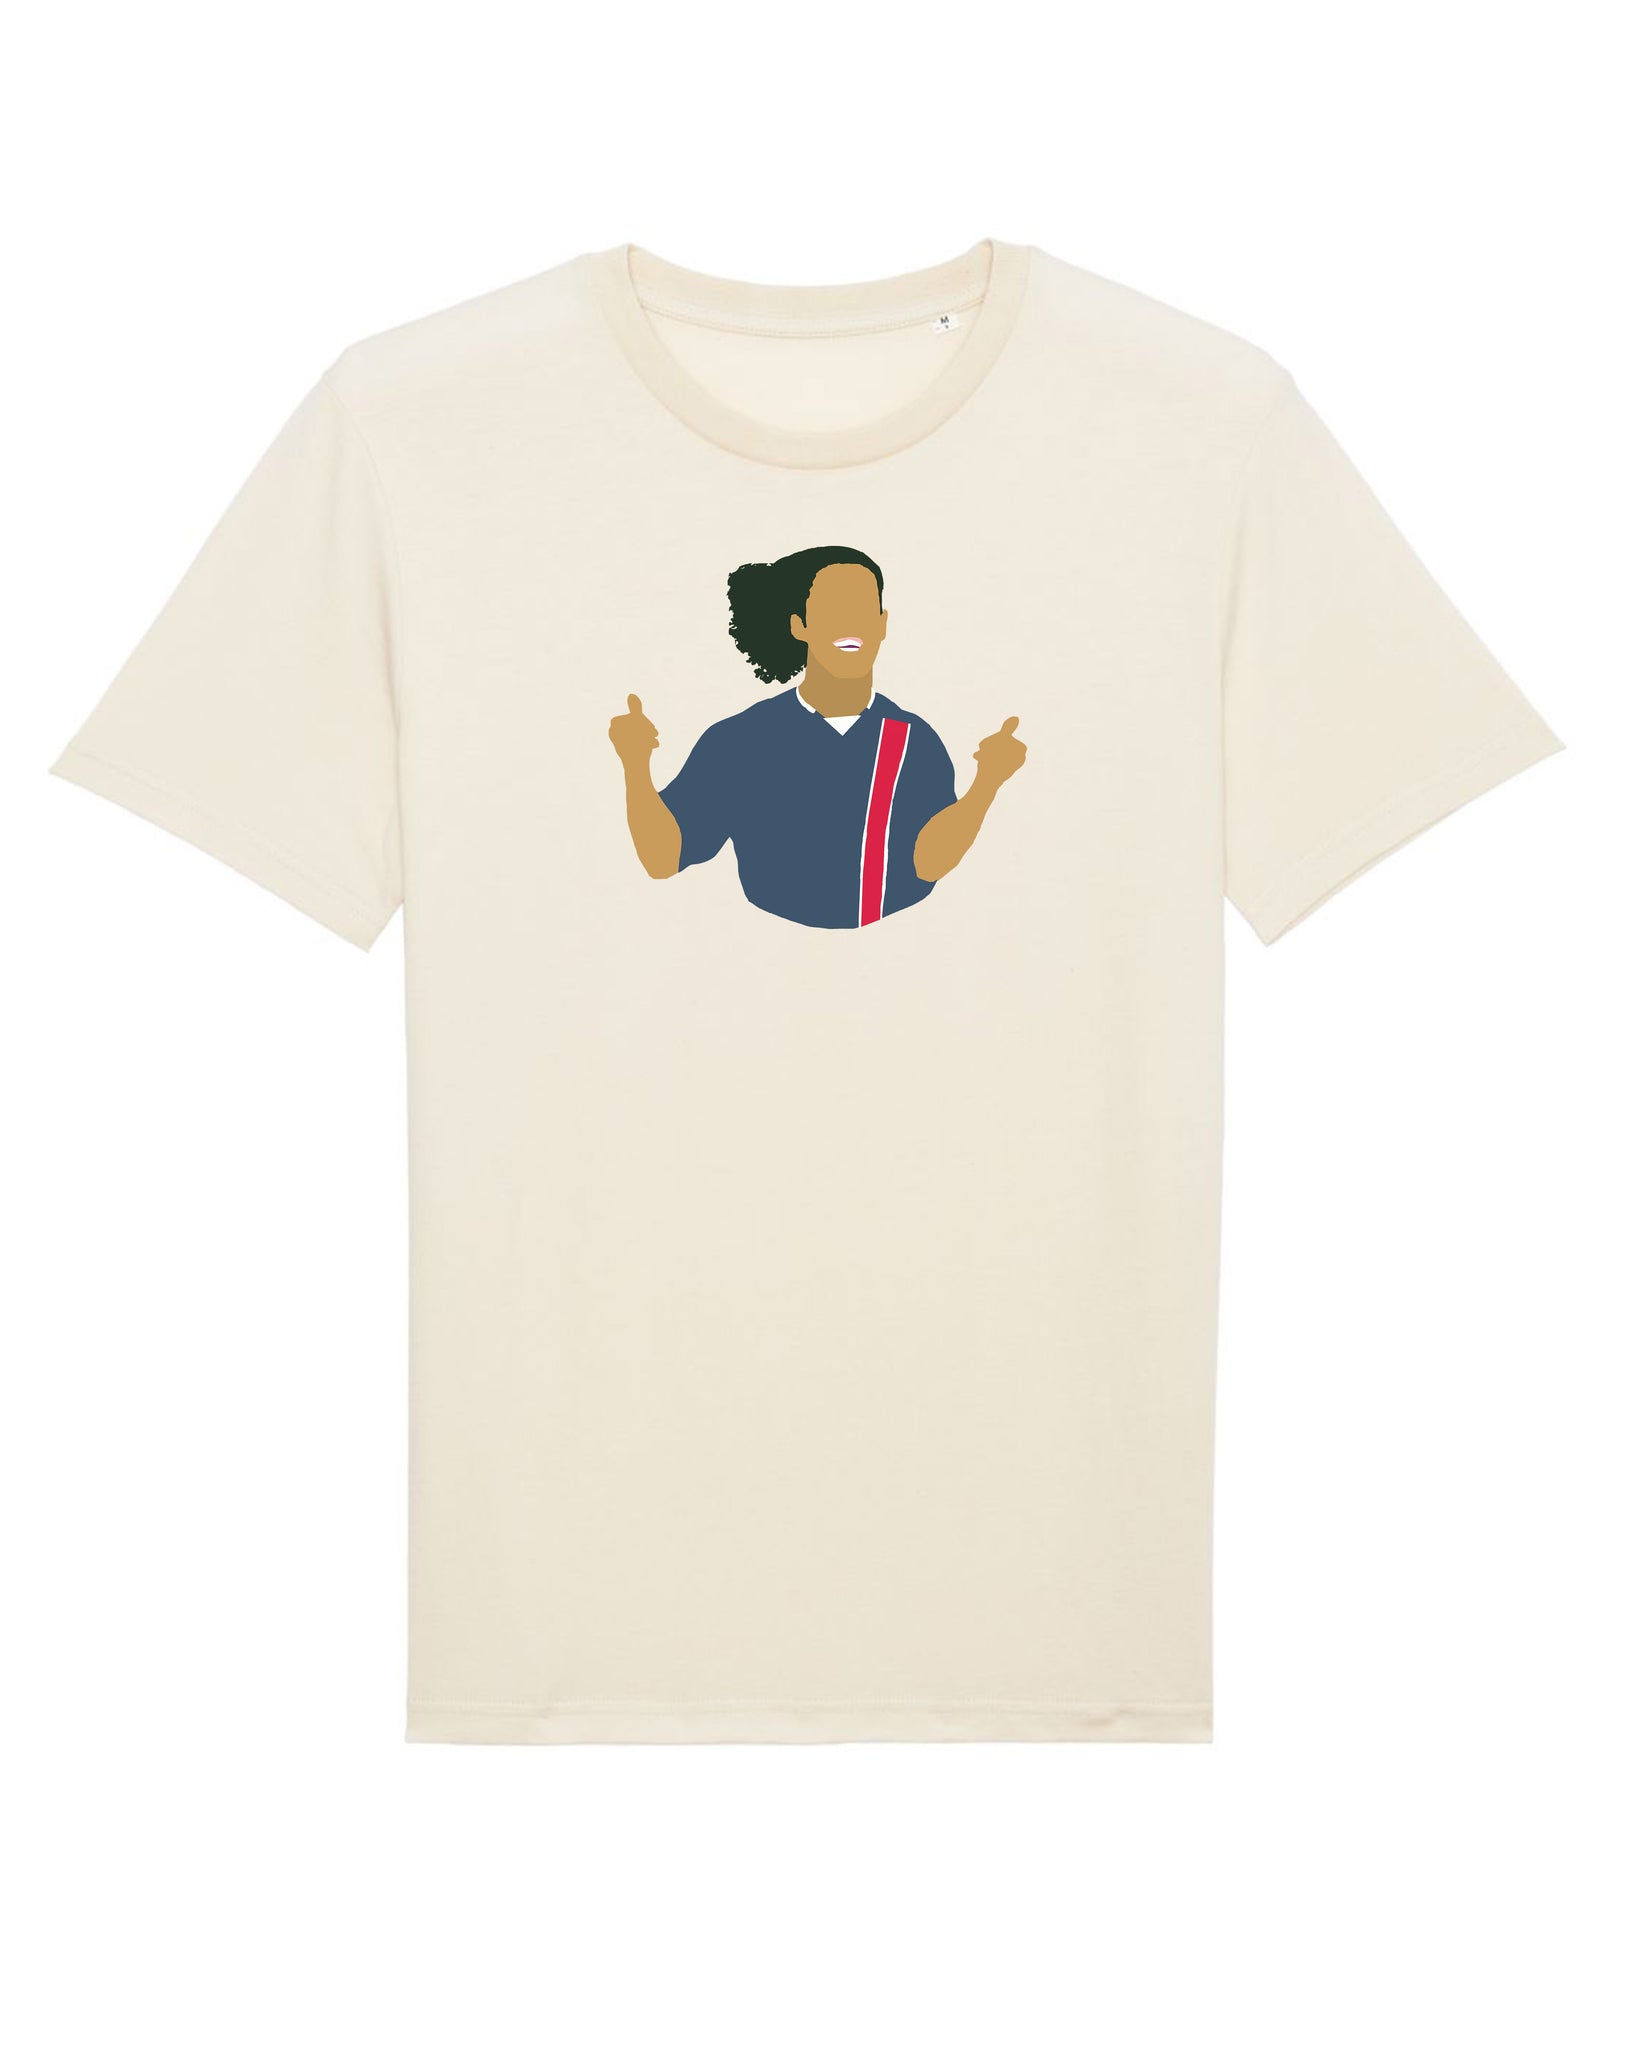 Tee Shirt Ronaldinho